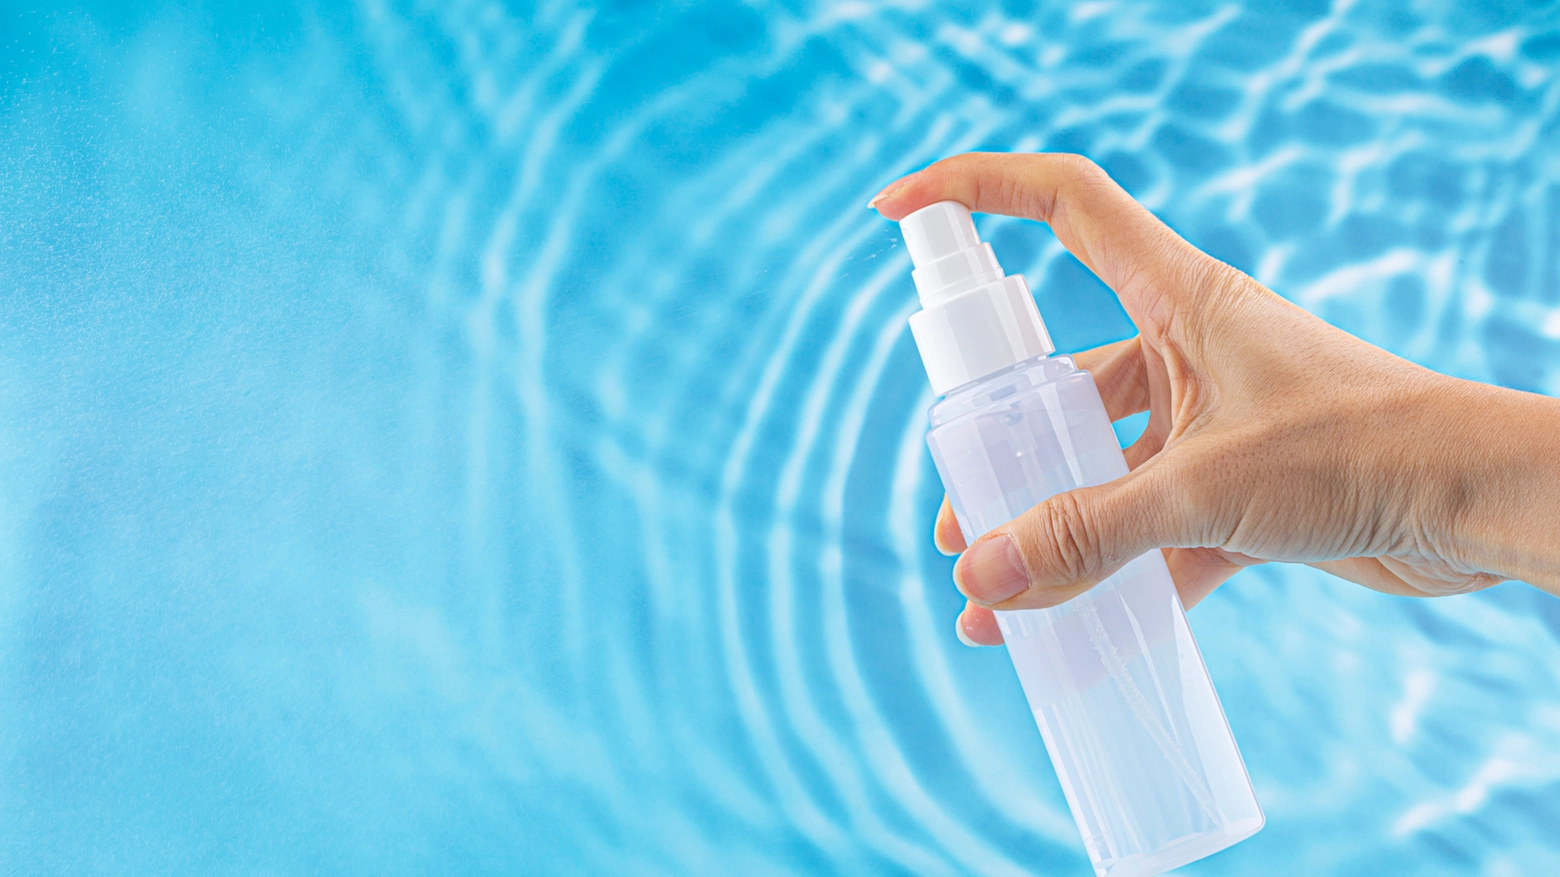 La guida per la scelta della migliore acqua termale per la pelle - Crediti: iStock